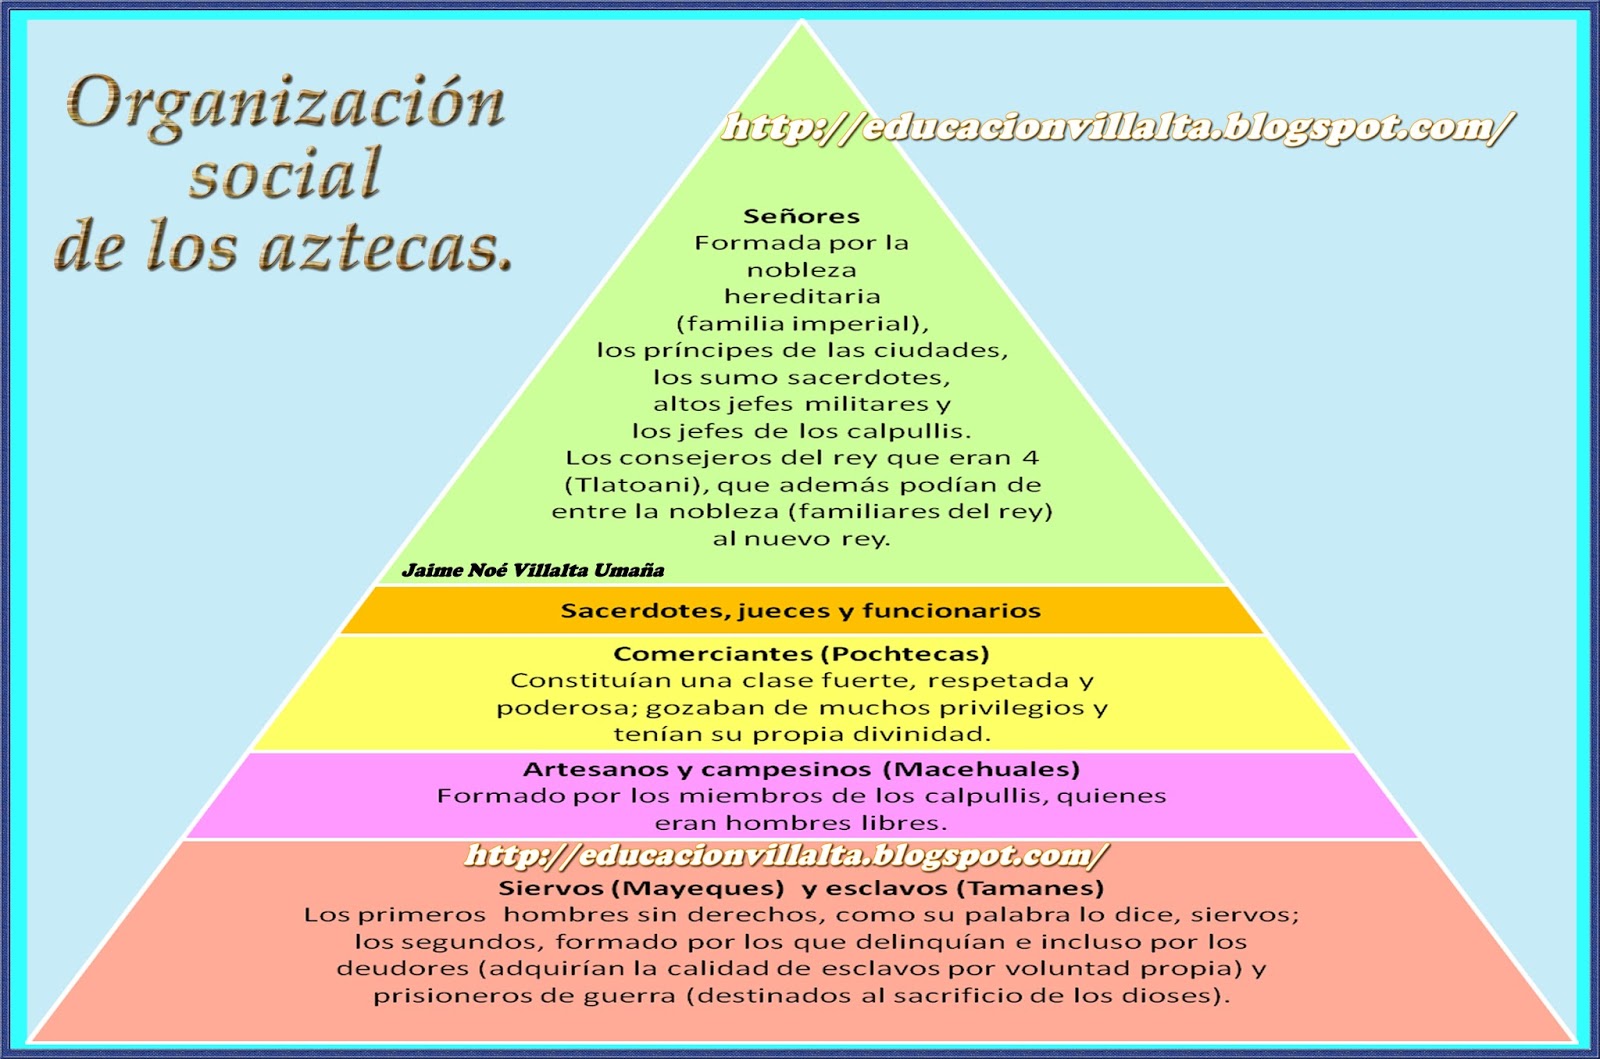 Organizacion Social De Los Mayas